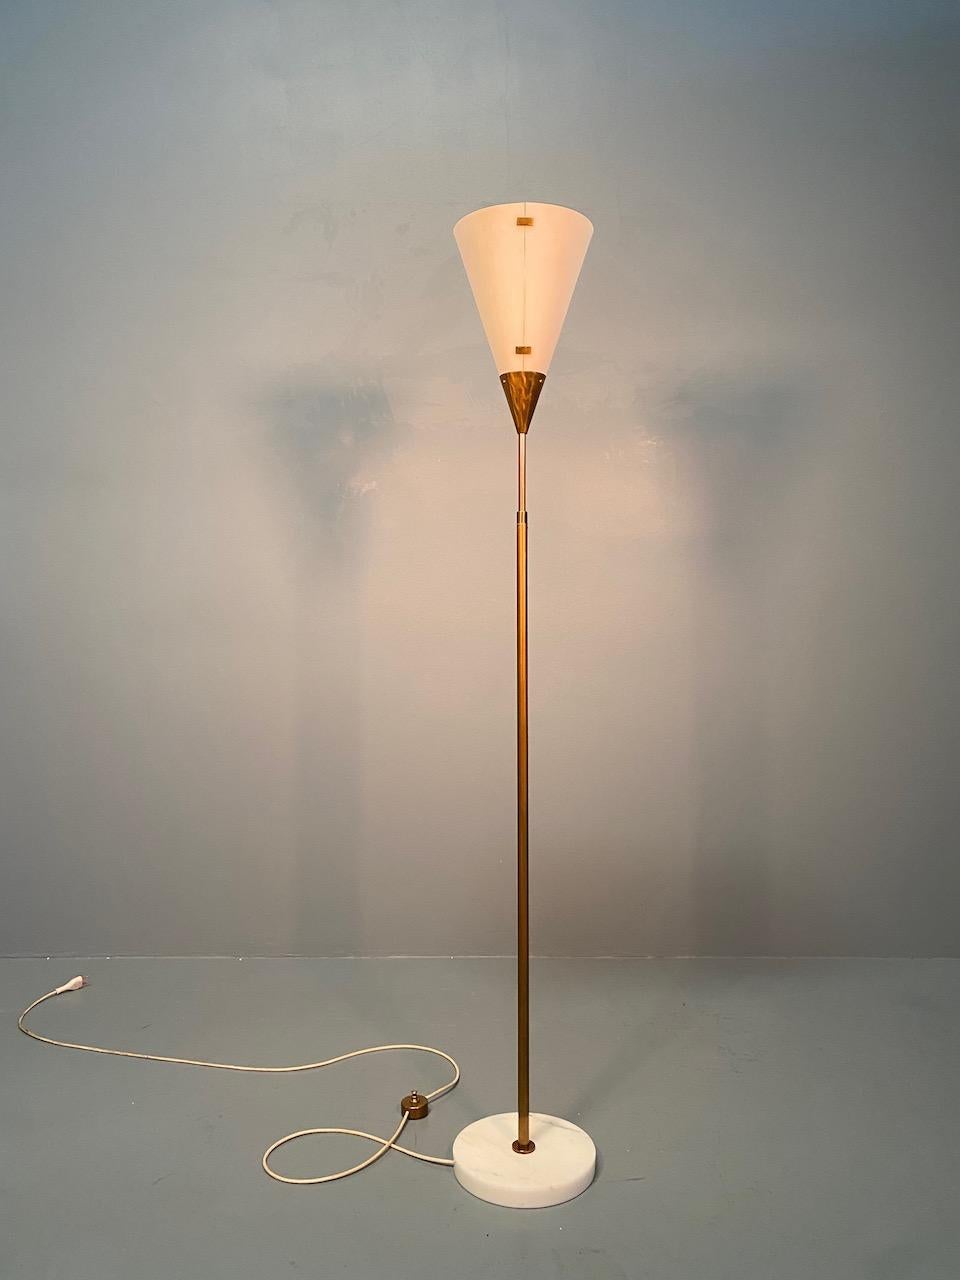 Superbe lampadaire ajustable minimaliste modèle 339 conçu par Giuseppe Ostuni et fabriqué par Oluce, Italie 1950. Le lampadaire est doté d'une base ronde en marbre de Carrare et d'une tige extensible en laiton. L'abat-jour est en plexiglas blanc